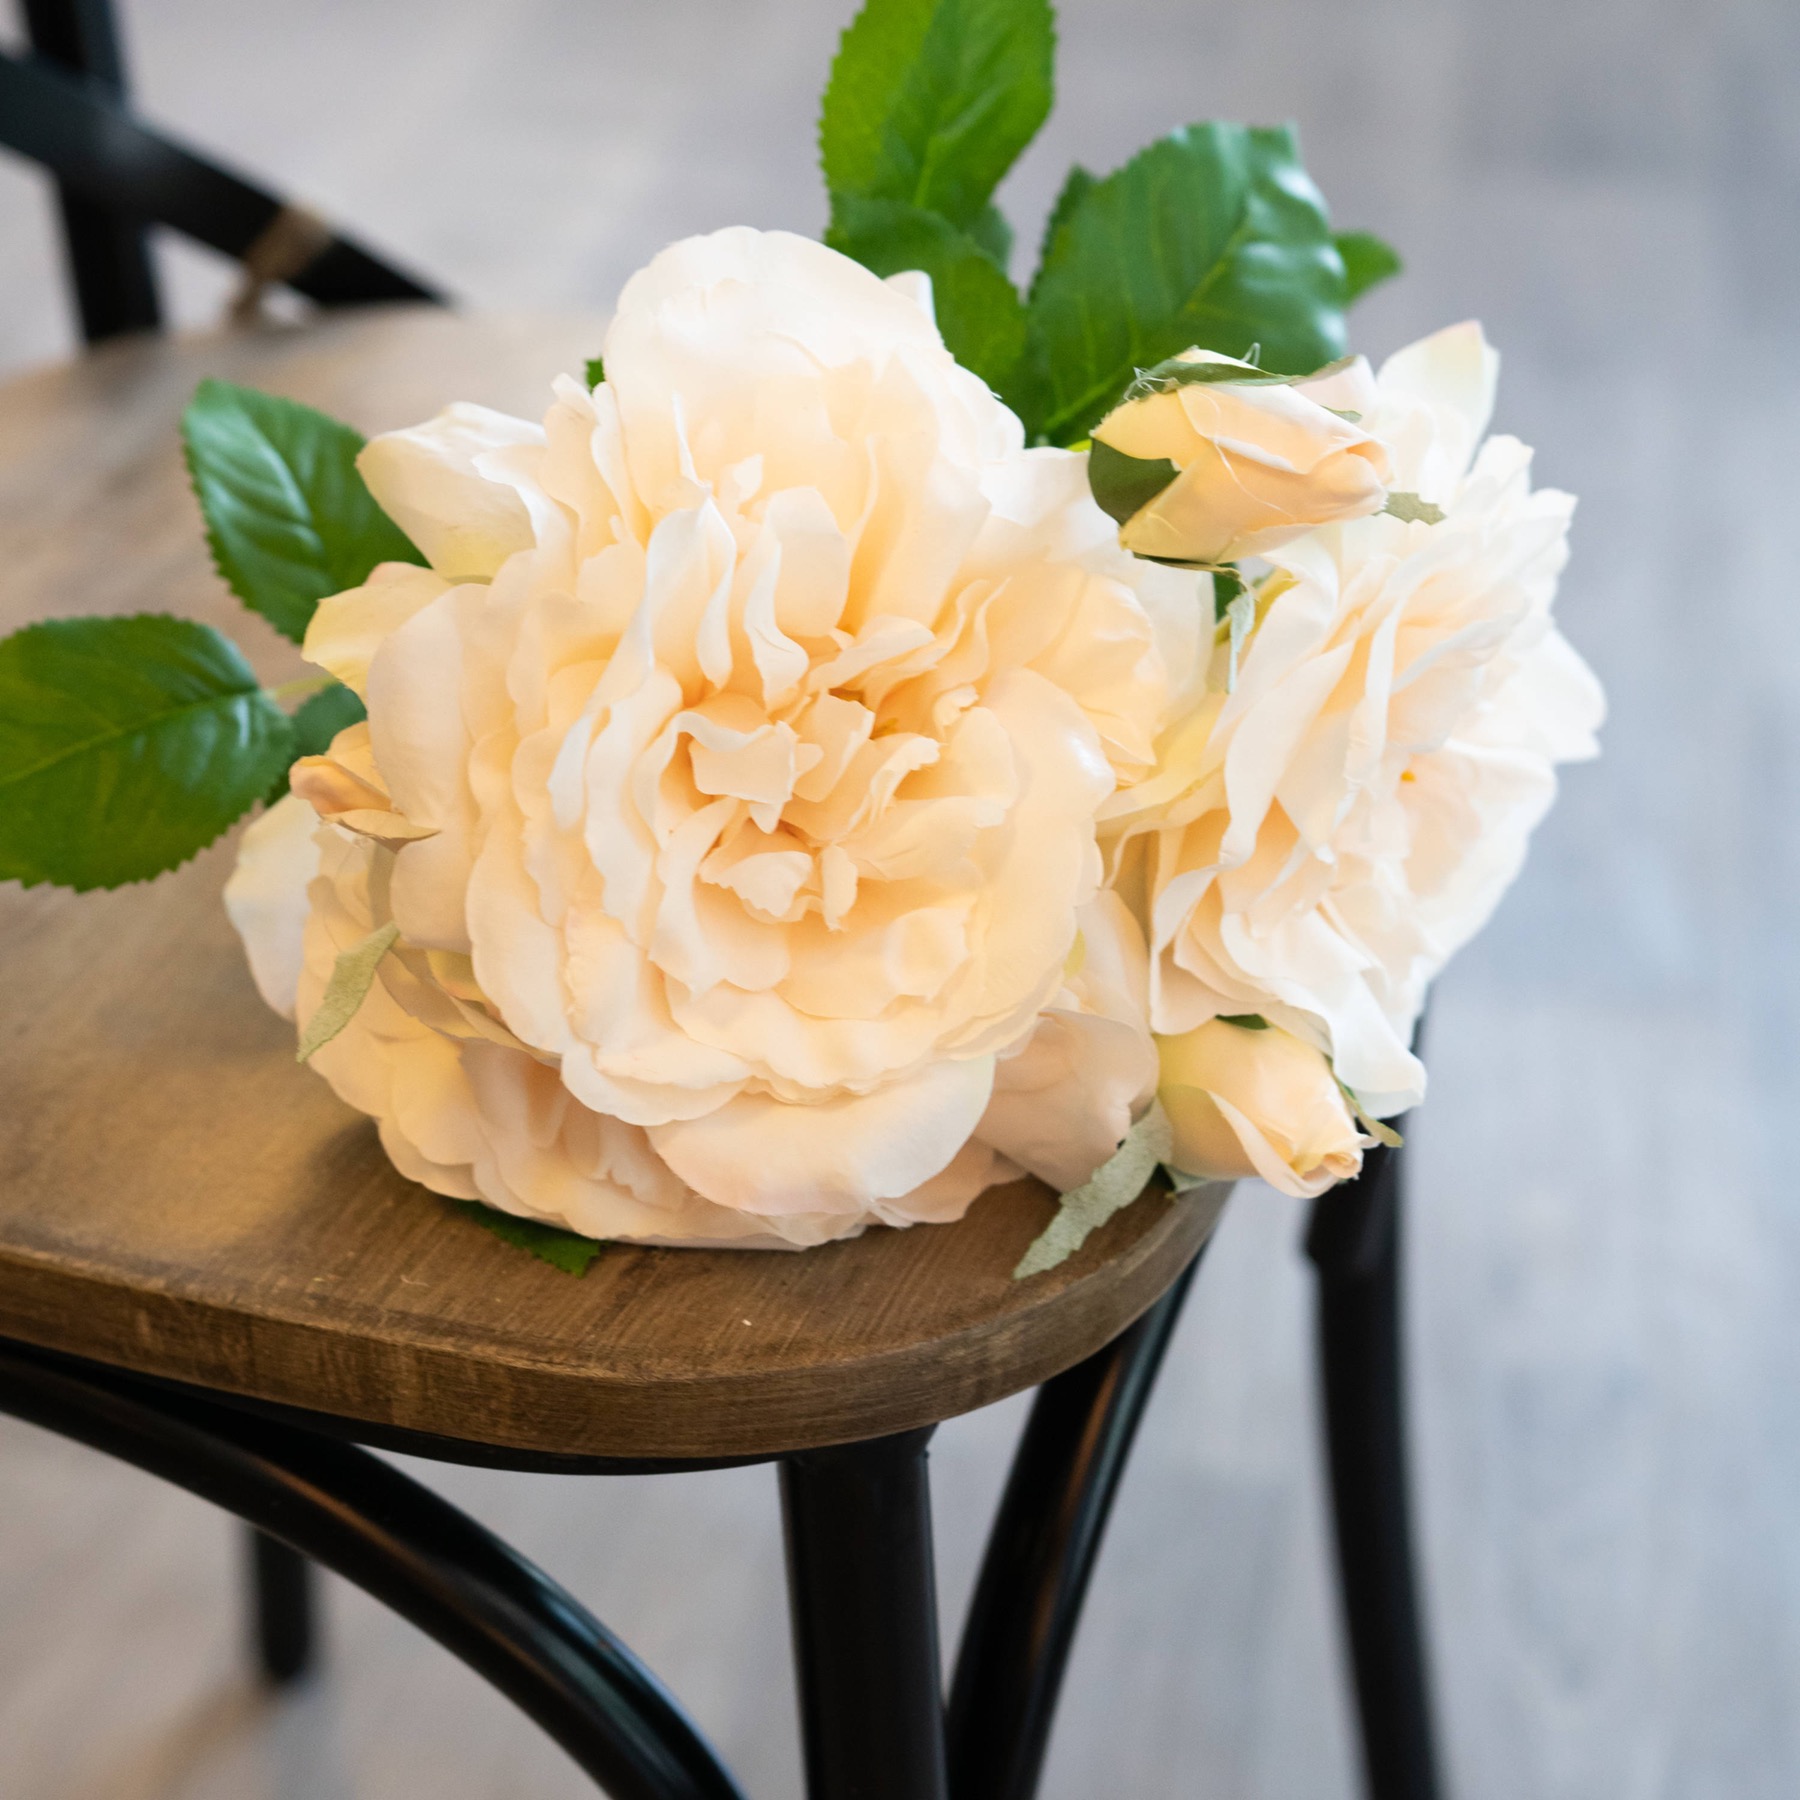 Peachy Cream Short Stem Rose Bouquet - Image 3